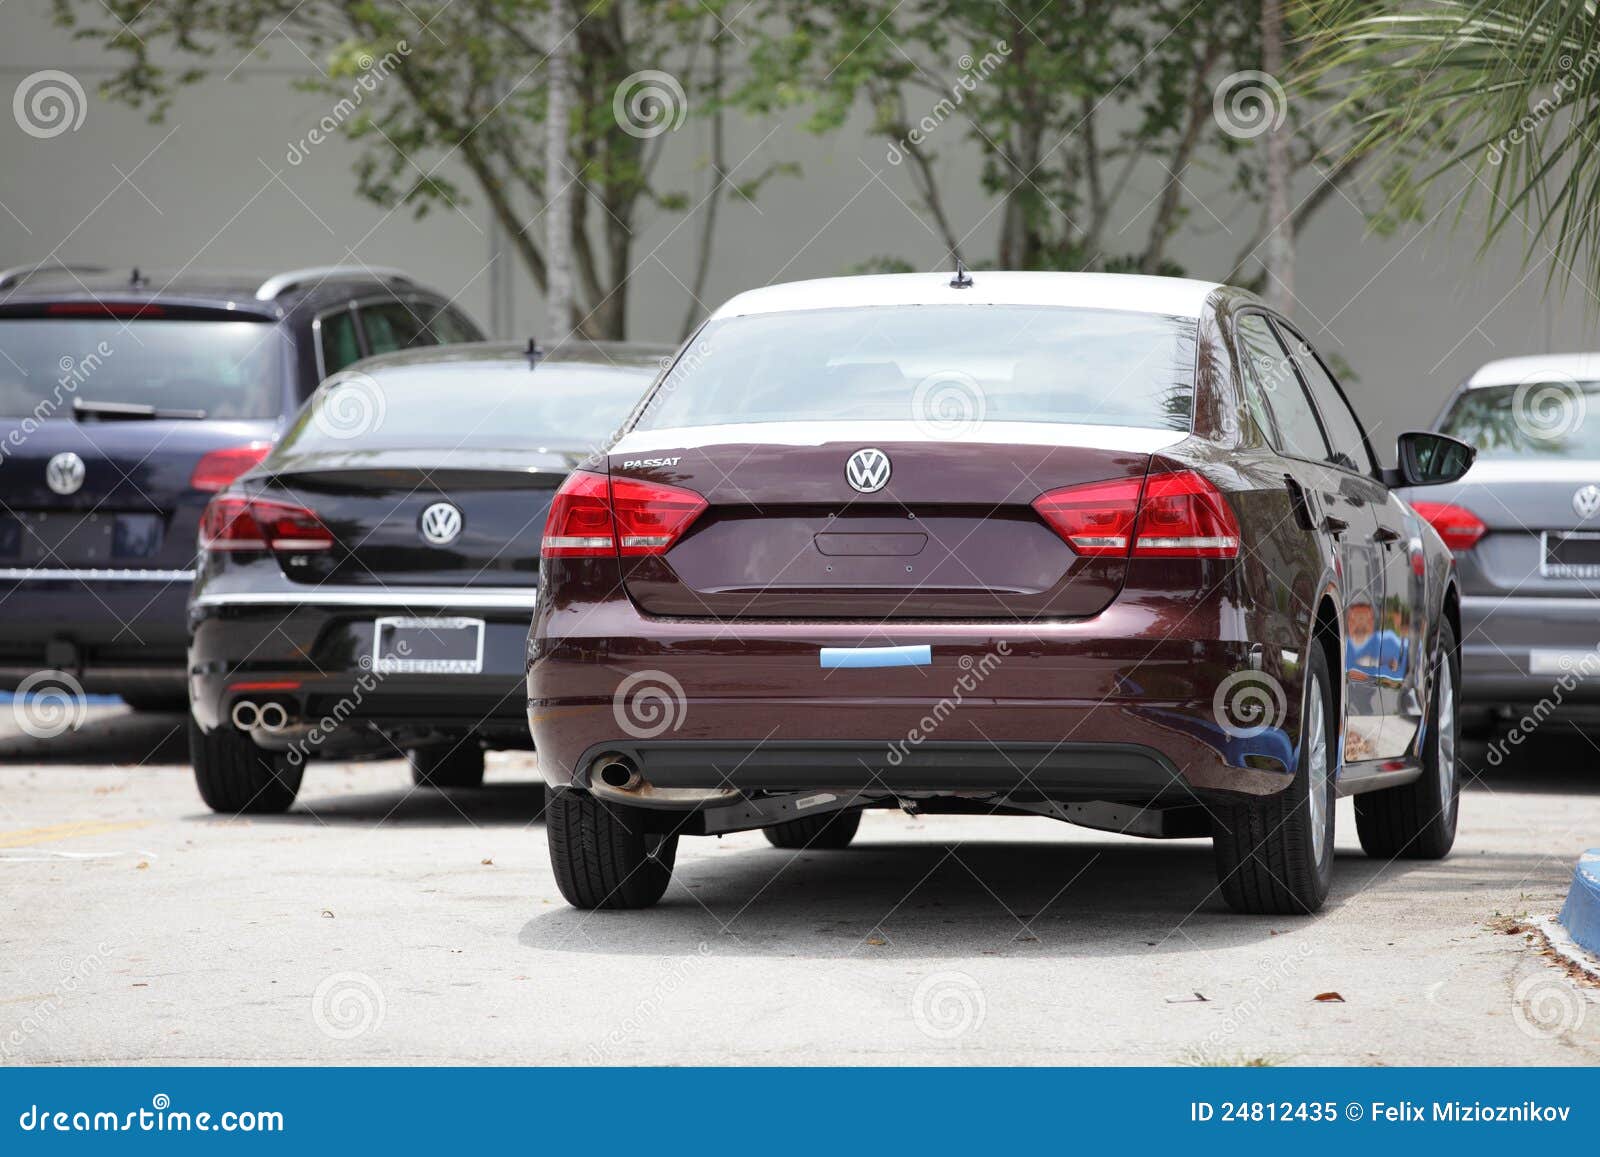 Volkswagen Passat B6 HUN Public Group